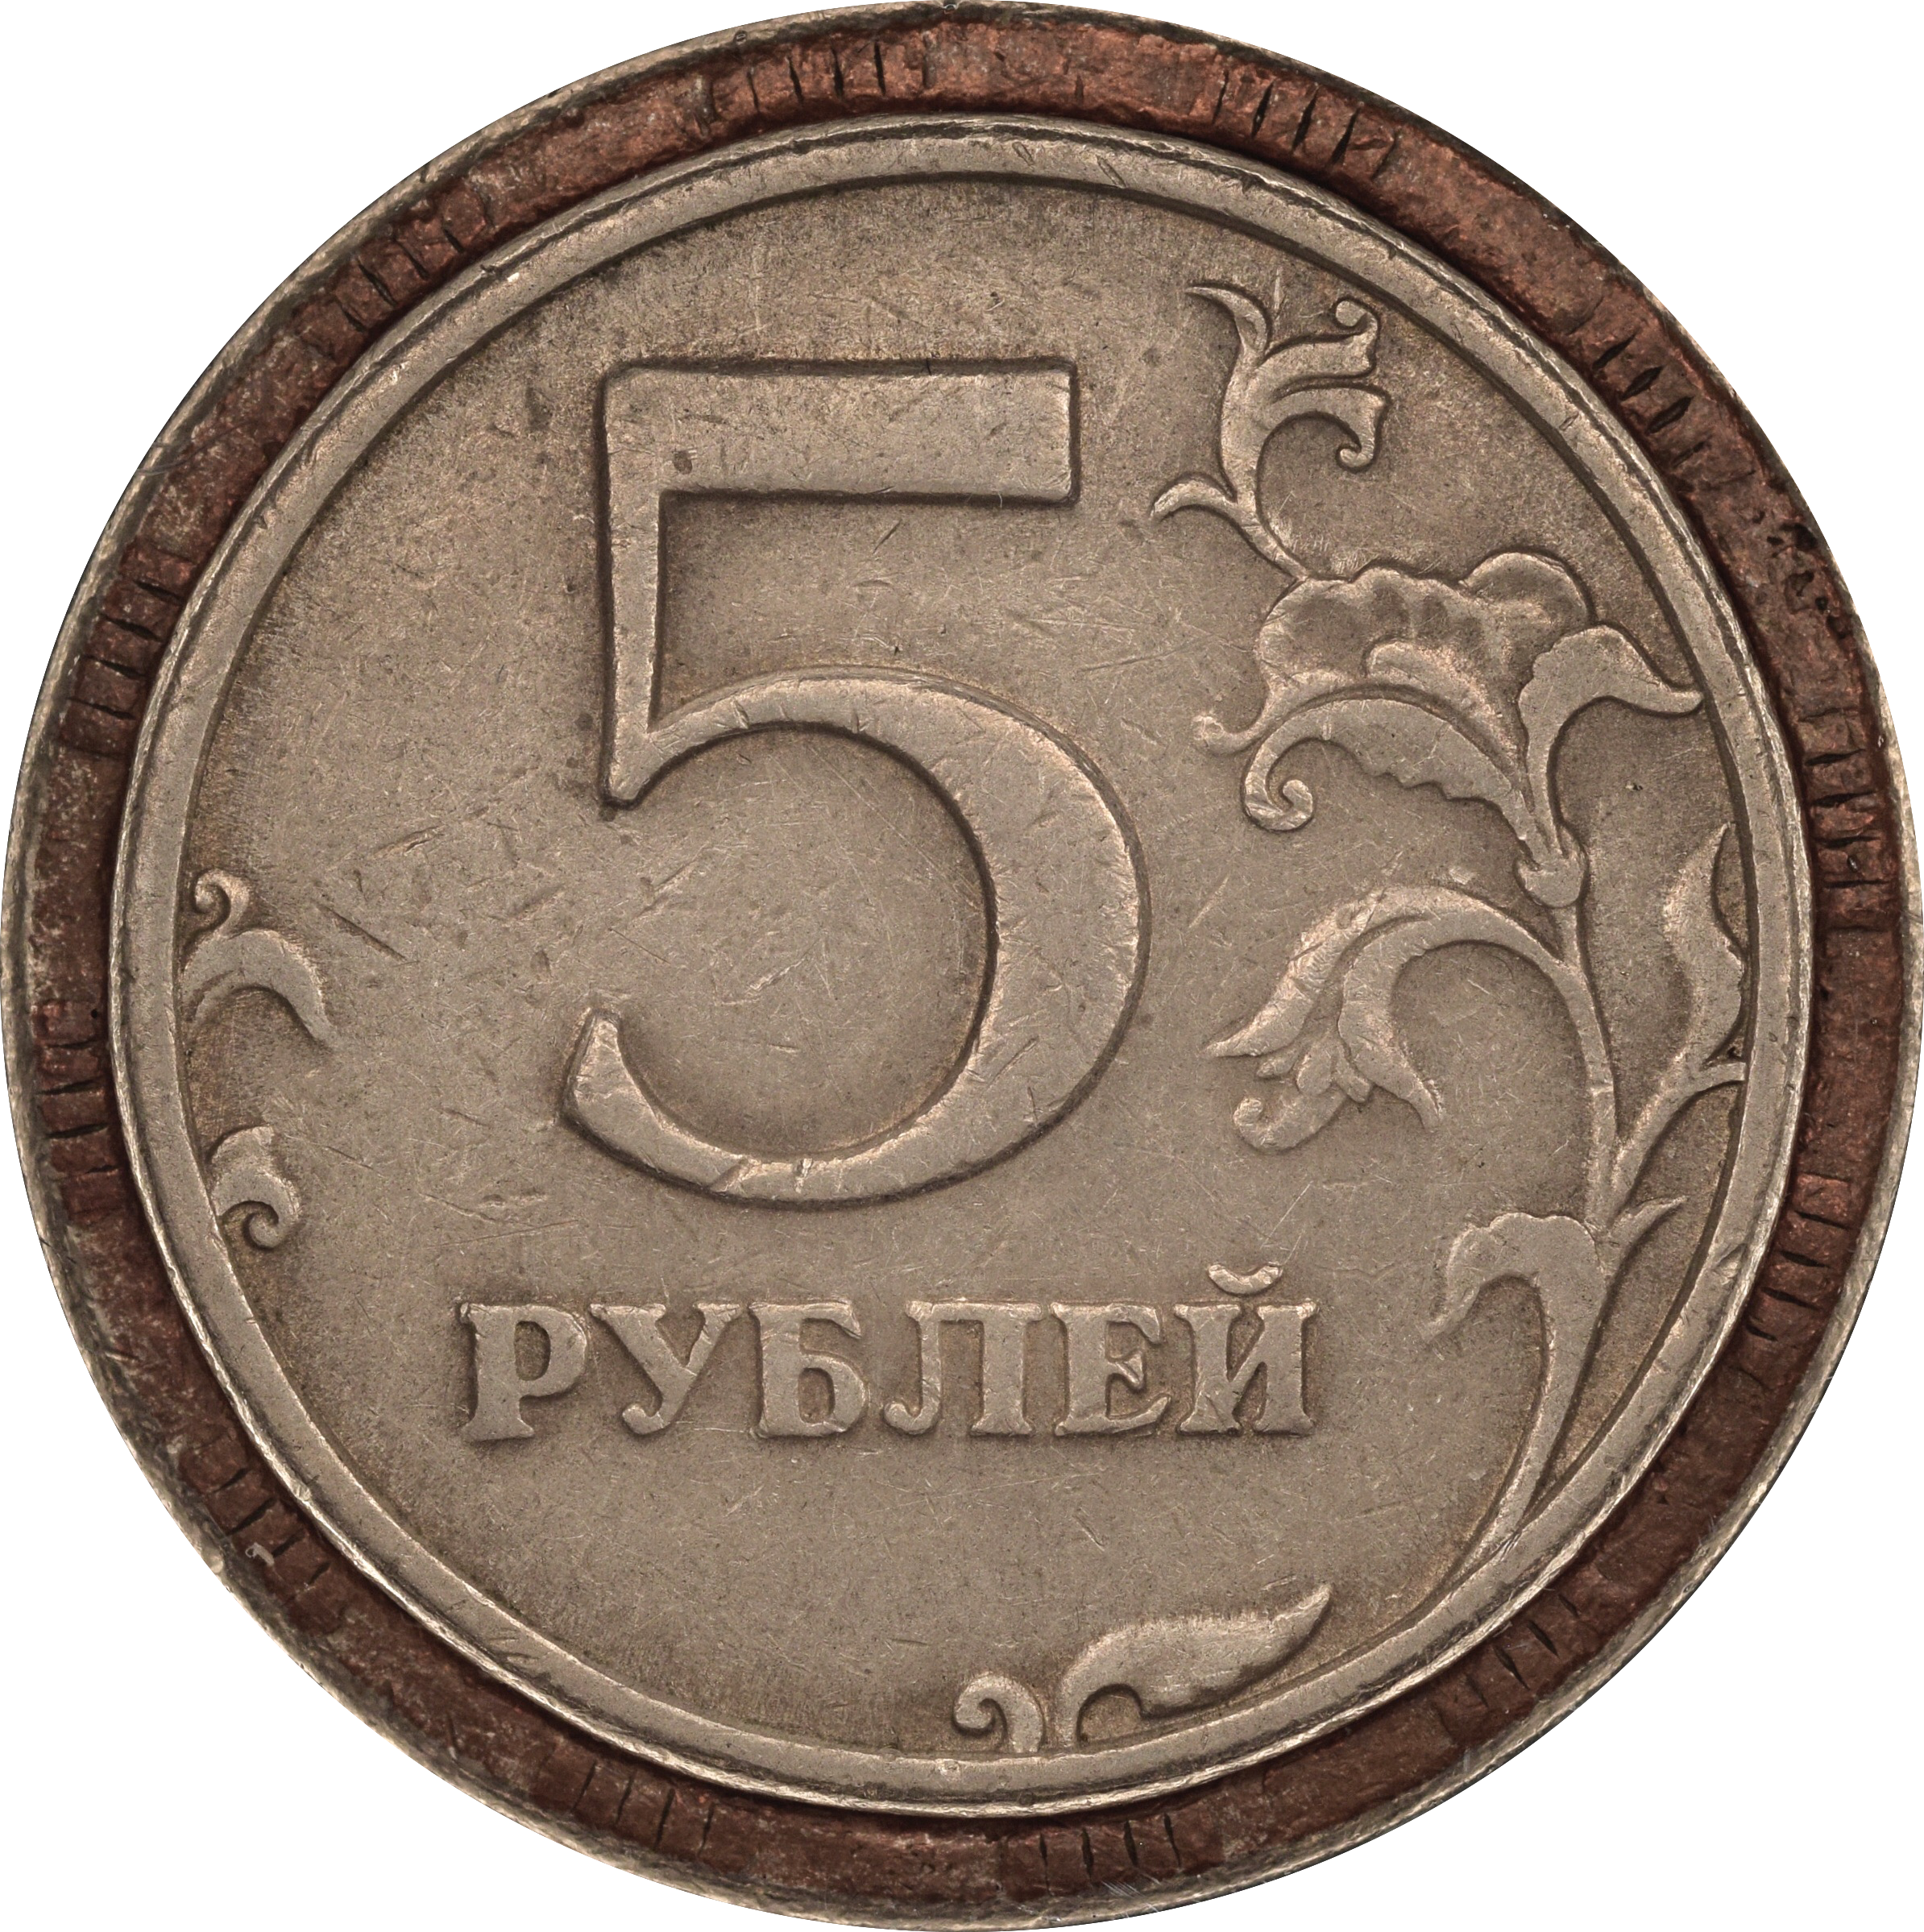 45 5 в рублях. 5 Рублей. Пять рублей. Монета 5 рублей и цифра 5. 5 Рублей 2 шт.